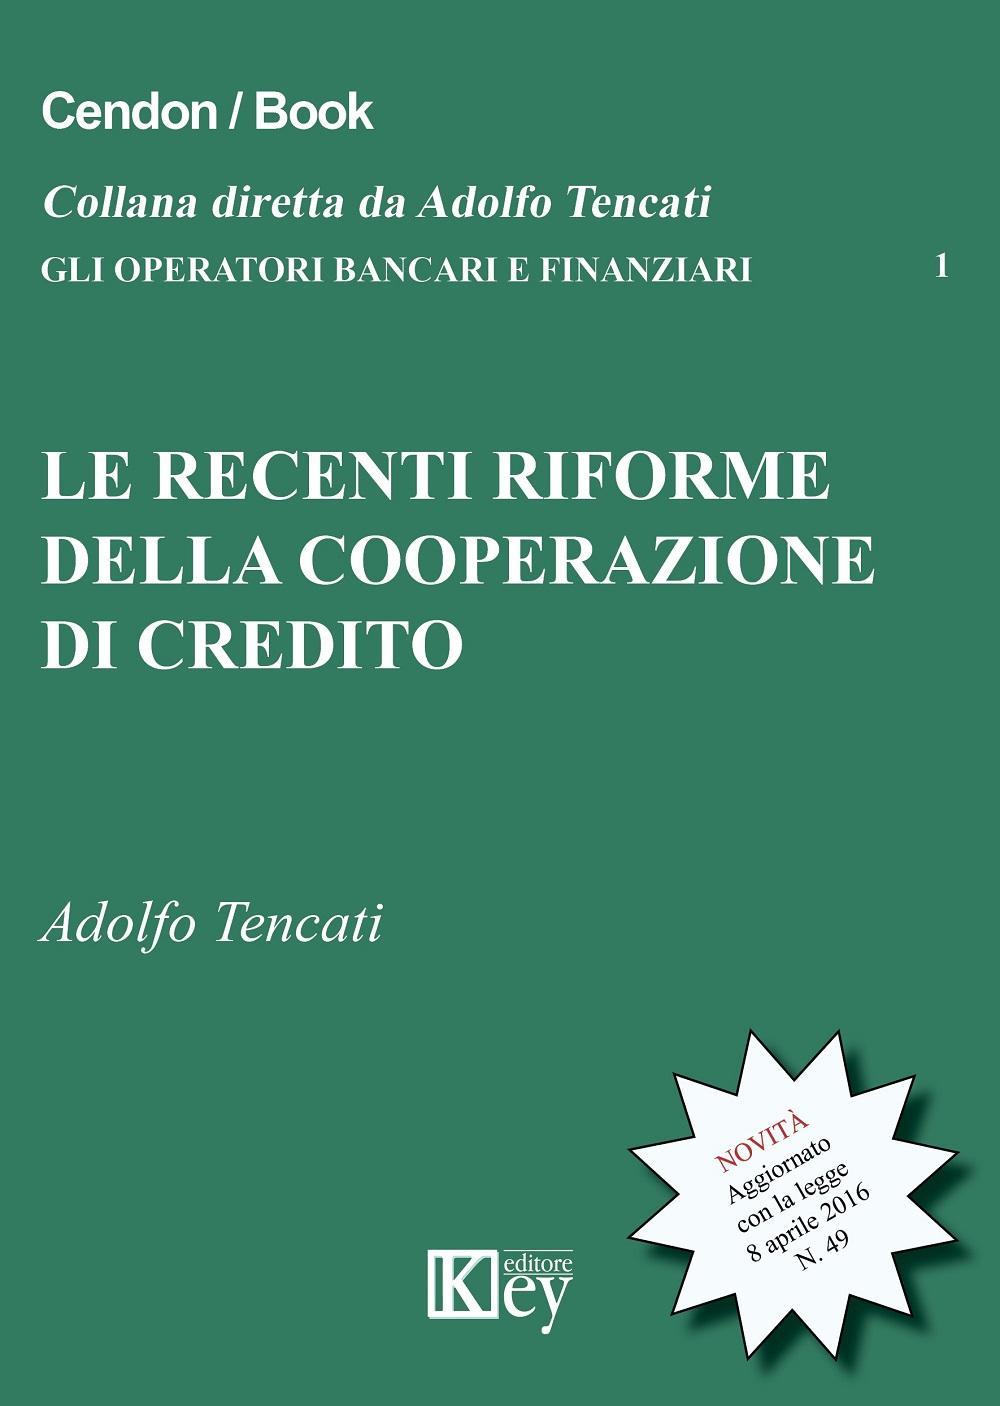 Le recenti riforme della cooperazione del credito